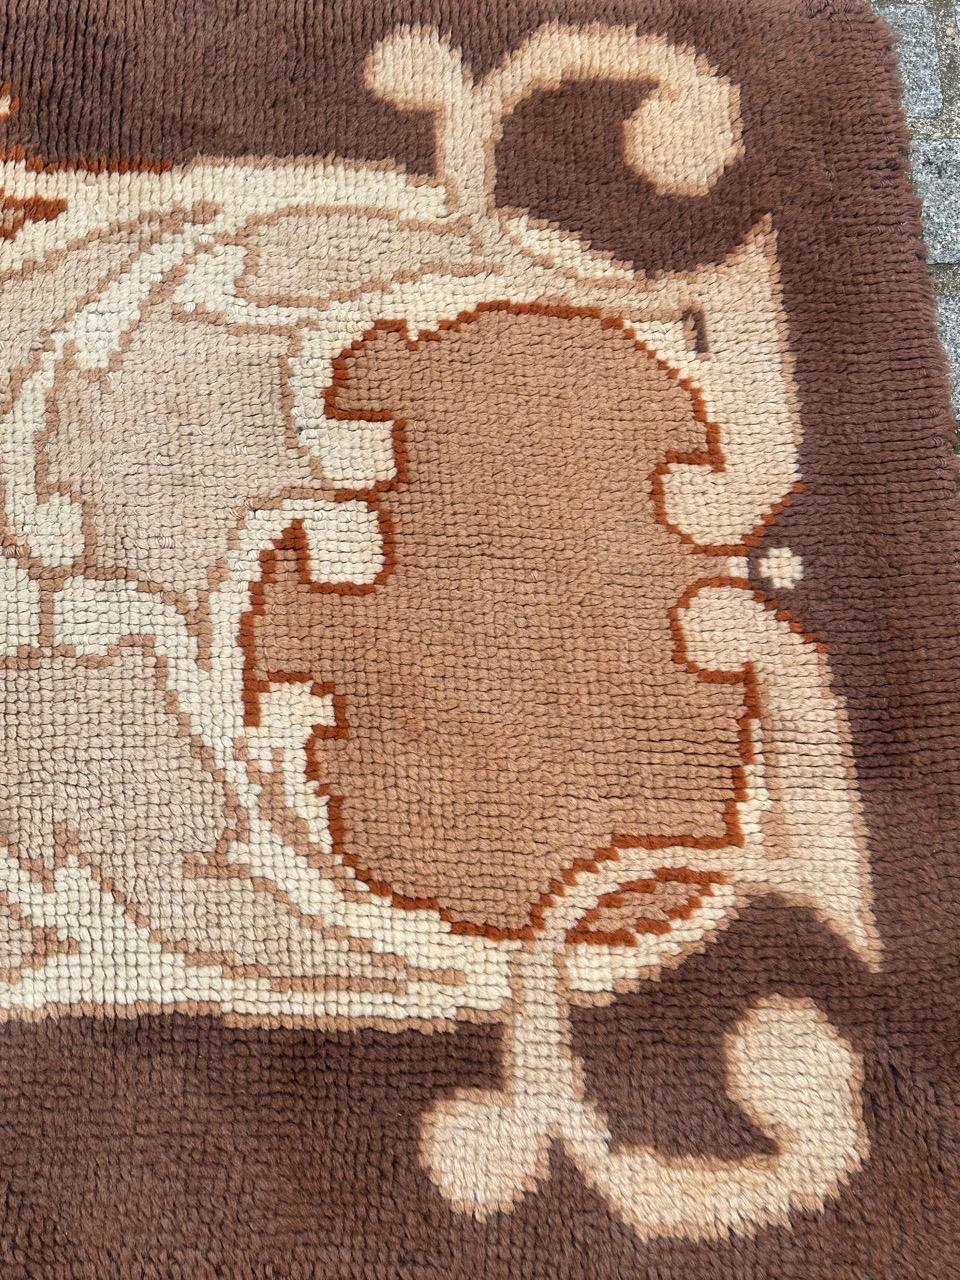 Schöner französischer Cogolin-Teppich aus der Mitte des Jahrhunderts mit schönem Jugendstil-Design und schönen Farben in Braun, Beige und Grau, komplett handgeknüpft mit Wolle auf Baumwollbasis.

✨✨✨
